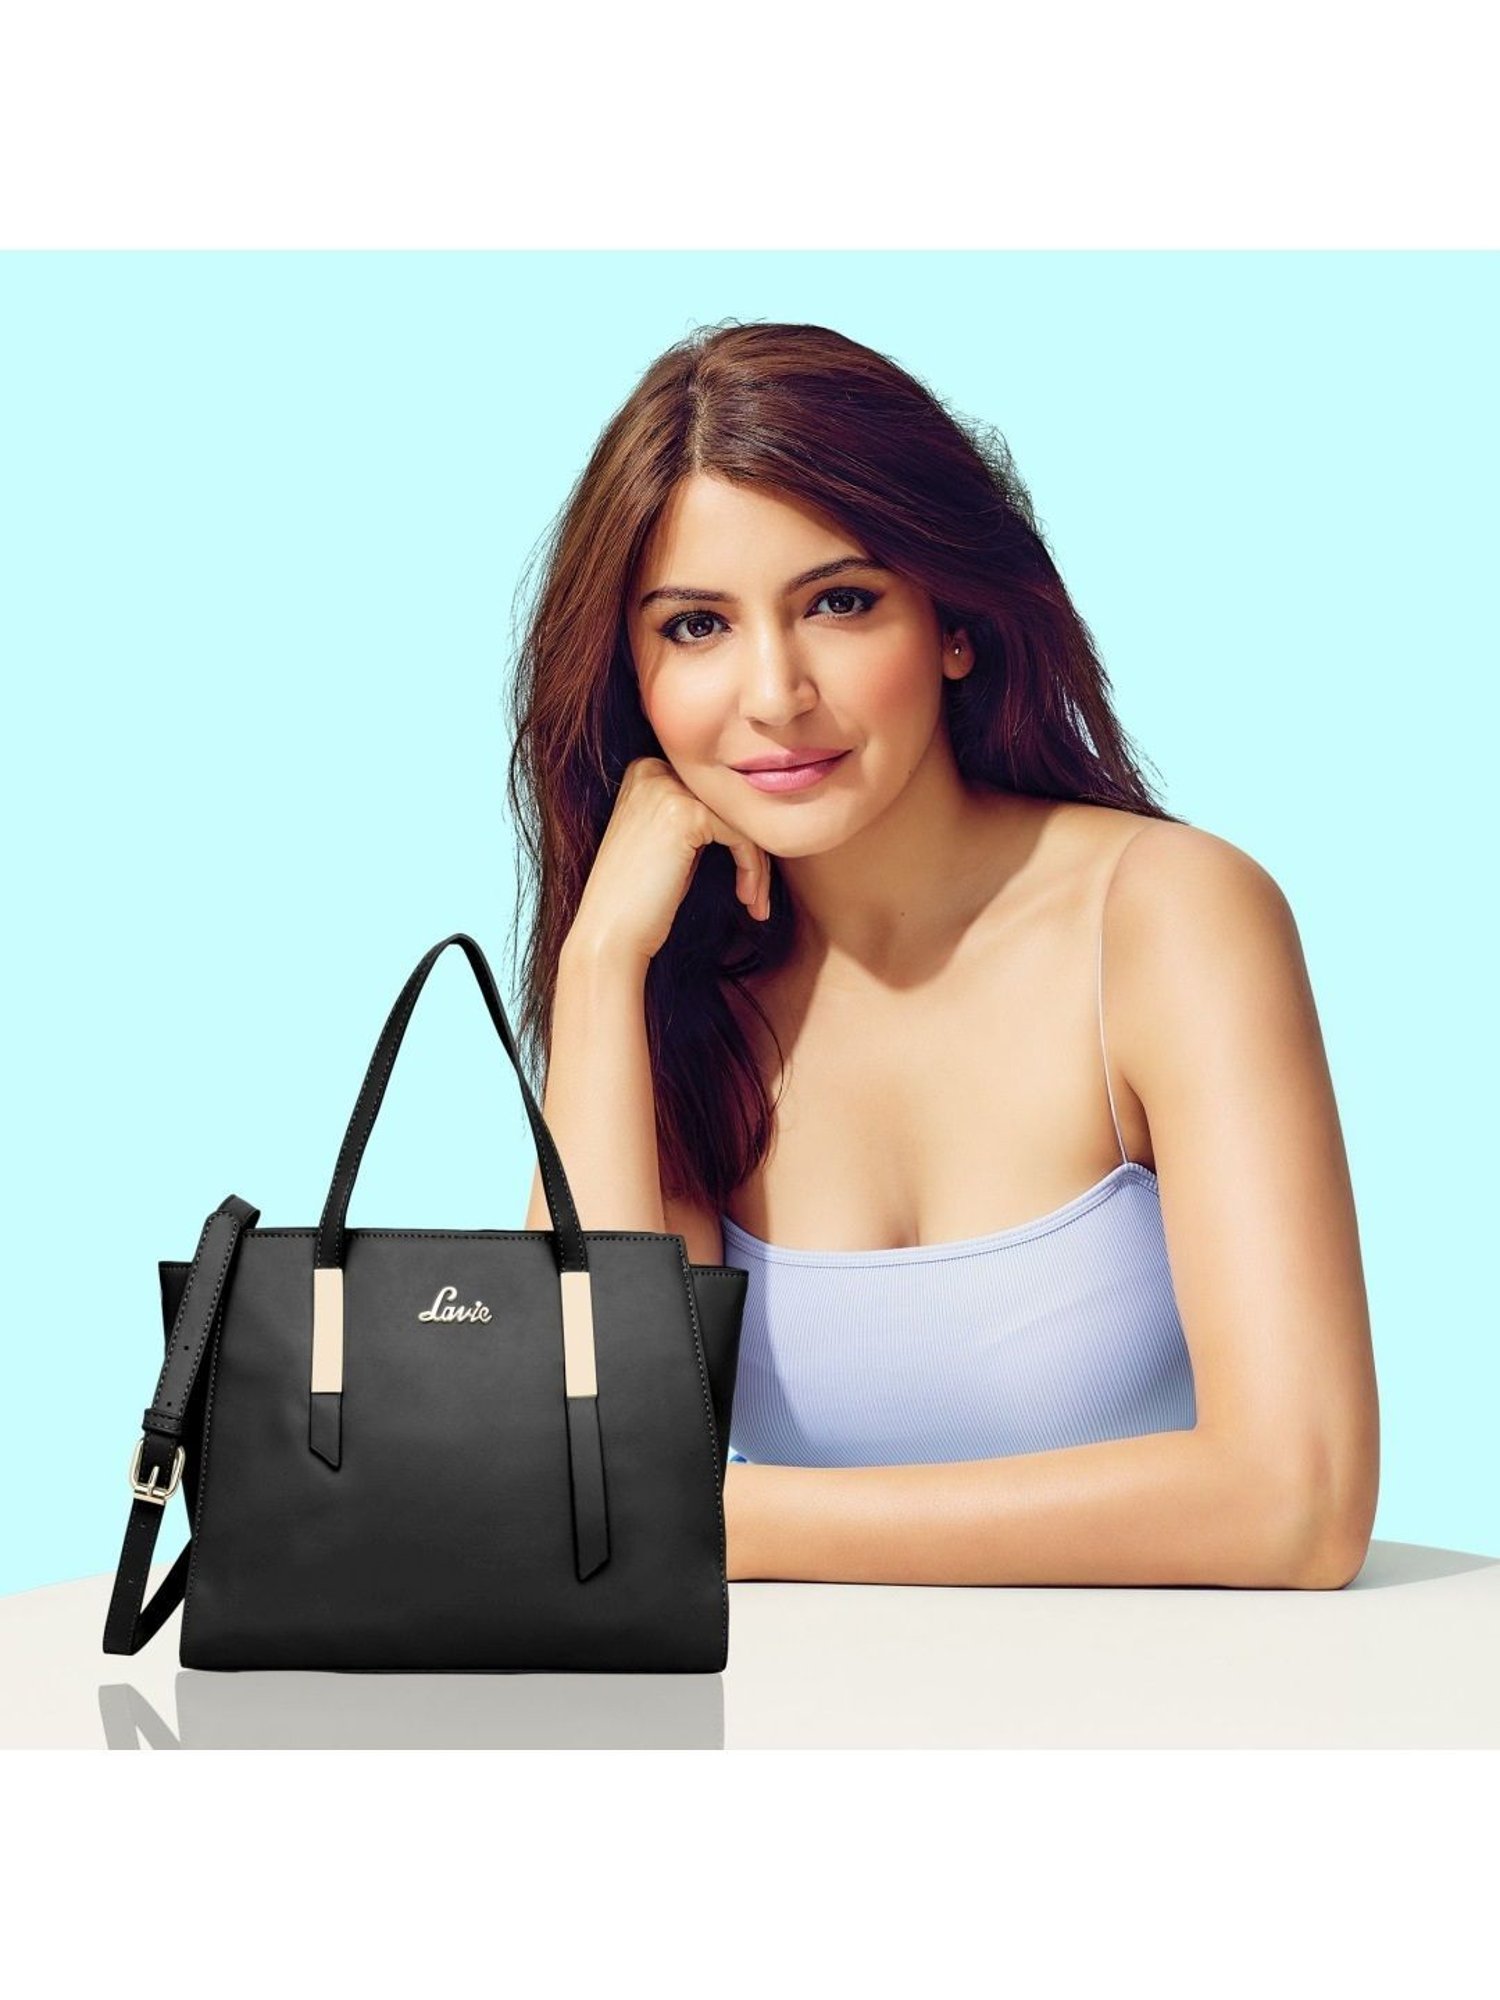 Amazon Wardrobe Refresh Sale: बाप रे! 76% की छूट पर मिल रहा है Lavie  Handbags, लूट लो दीदी लूट लो | amazon wardrobe refresh sale on lavie  handbags enjoy up to 76